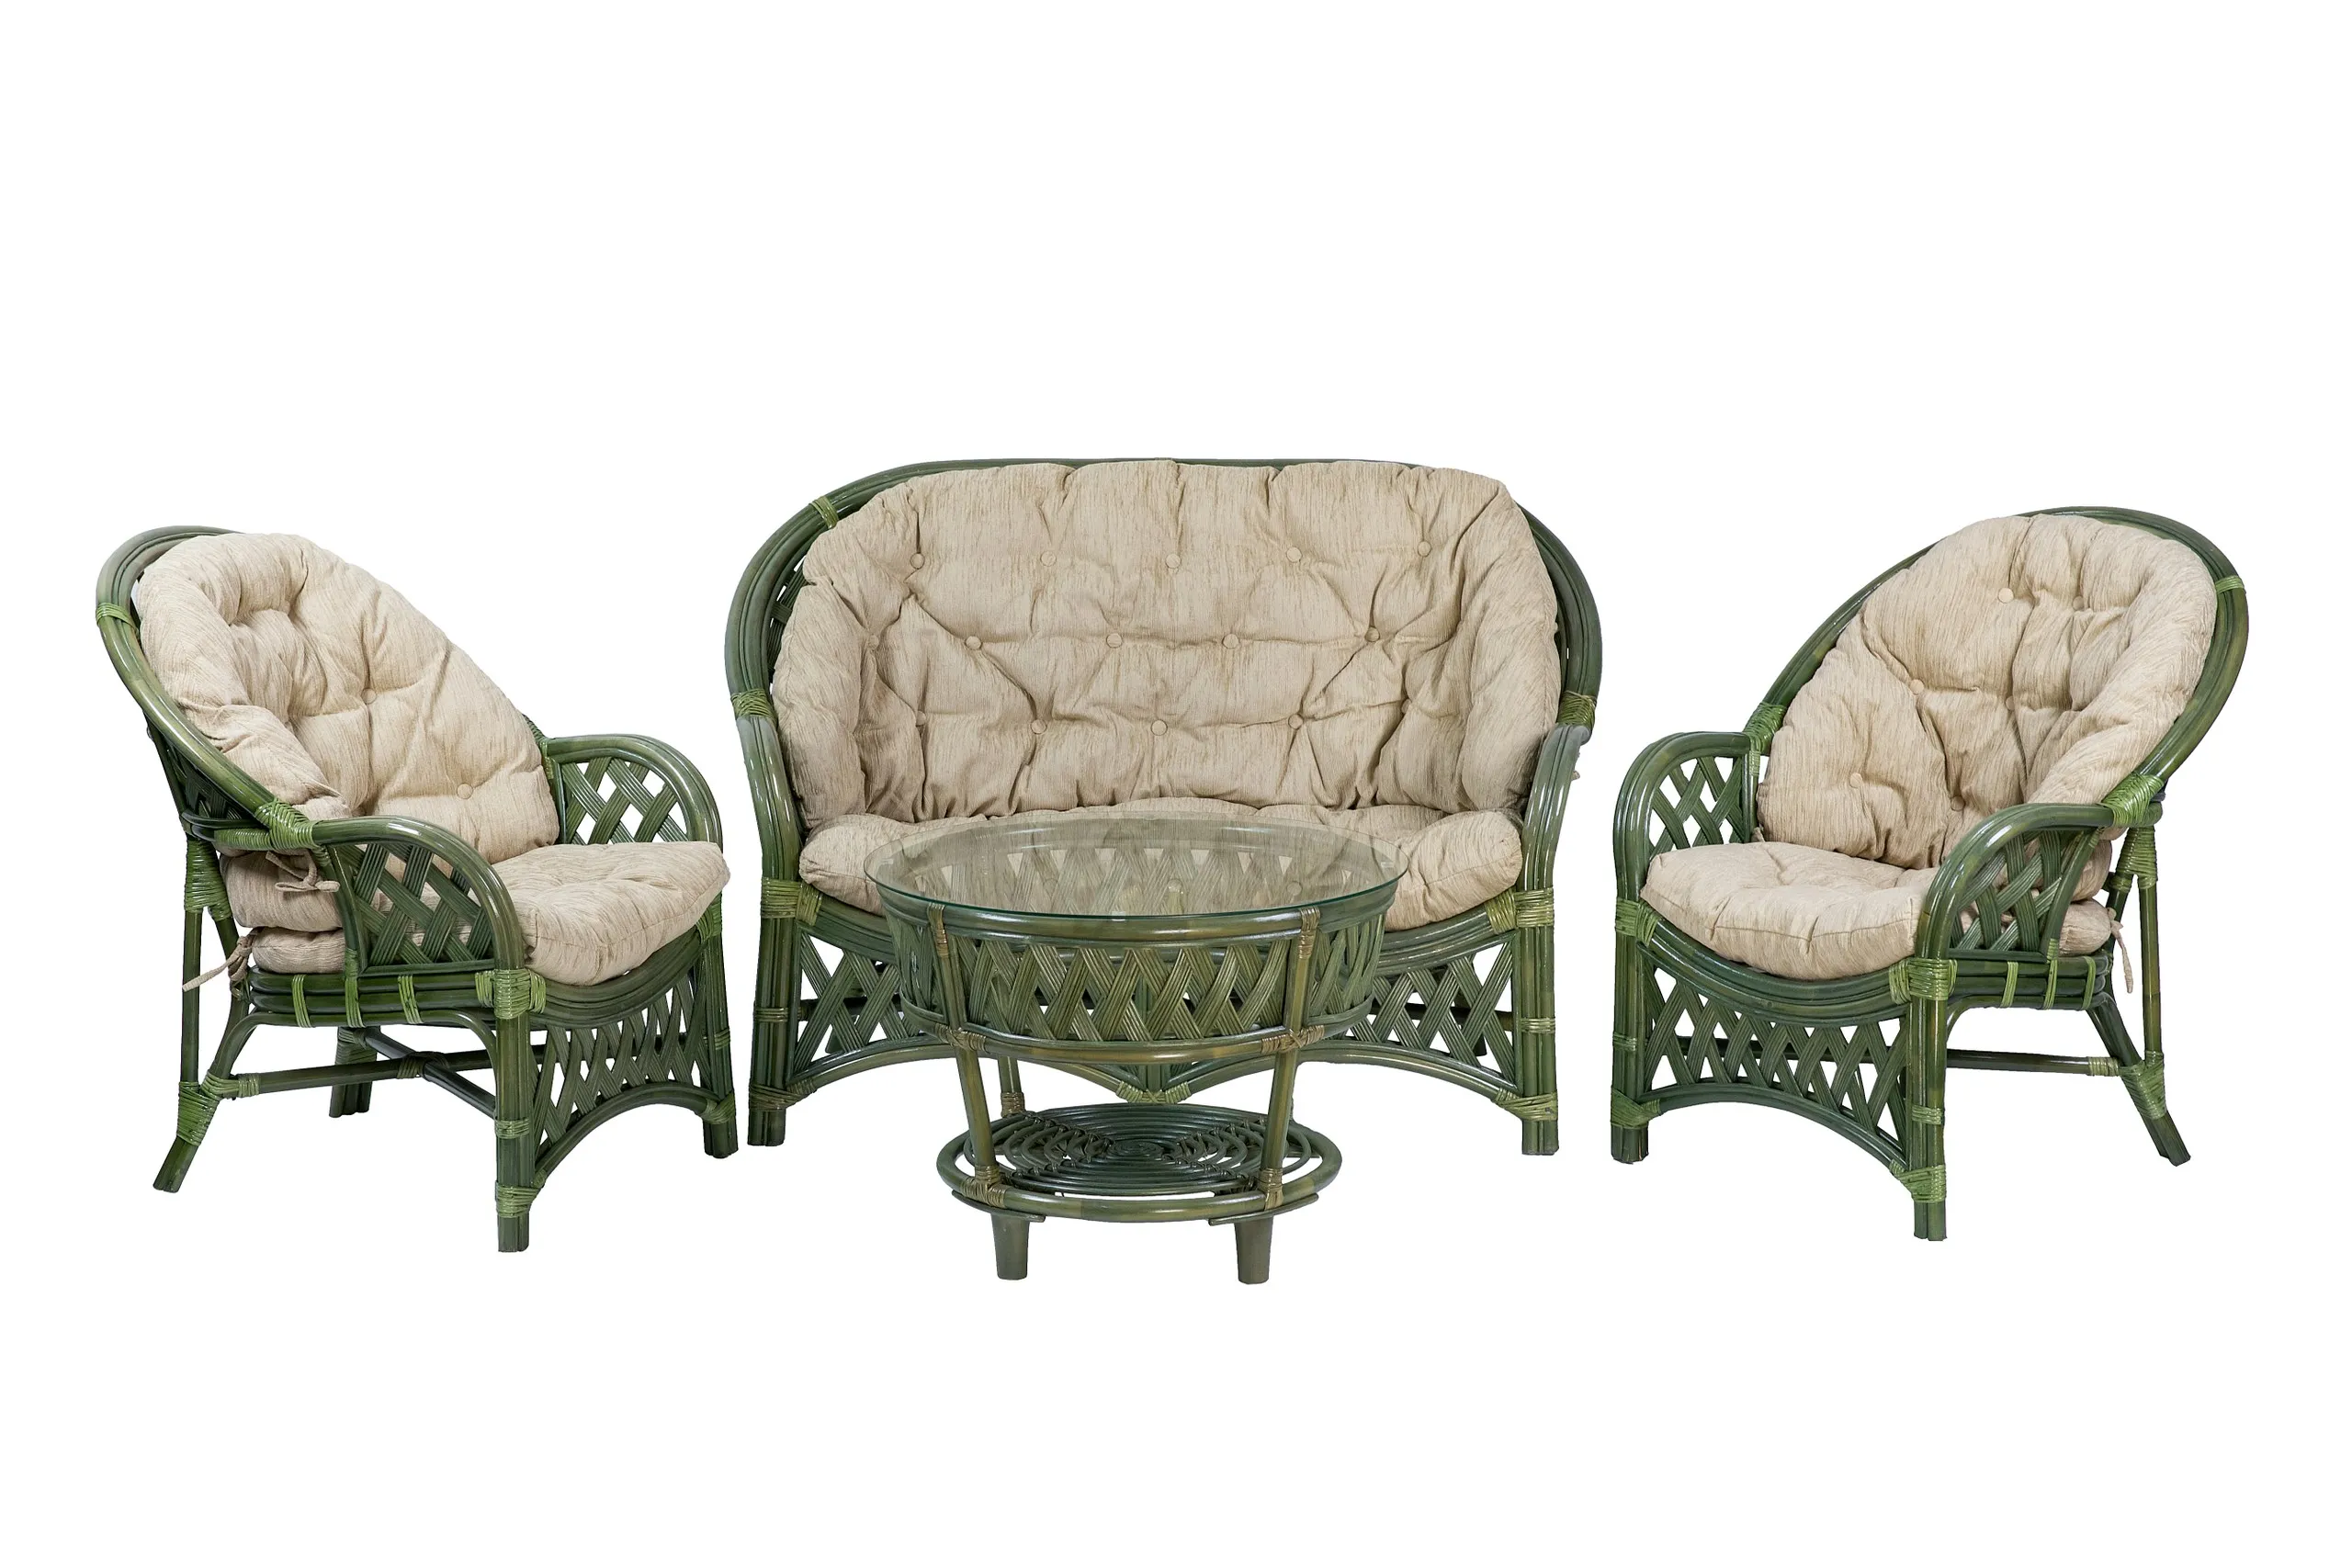 Комплект мебели из ротанга Черчилль (Рузвельт) с 2-х местным диваном и круглым столом олива